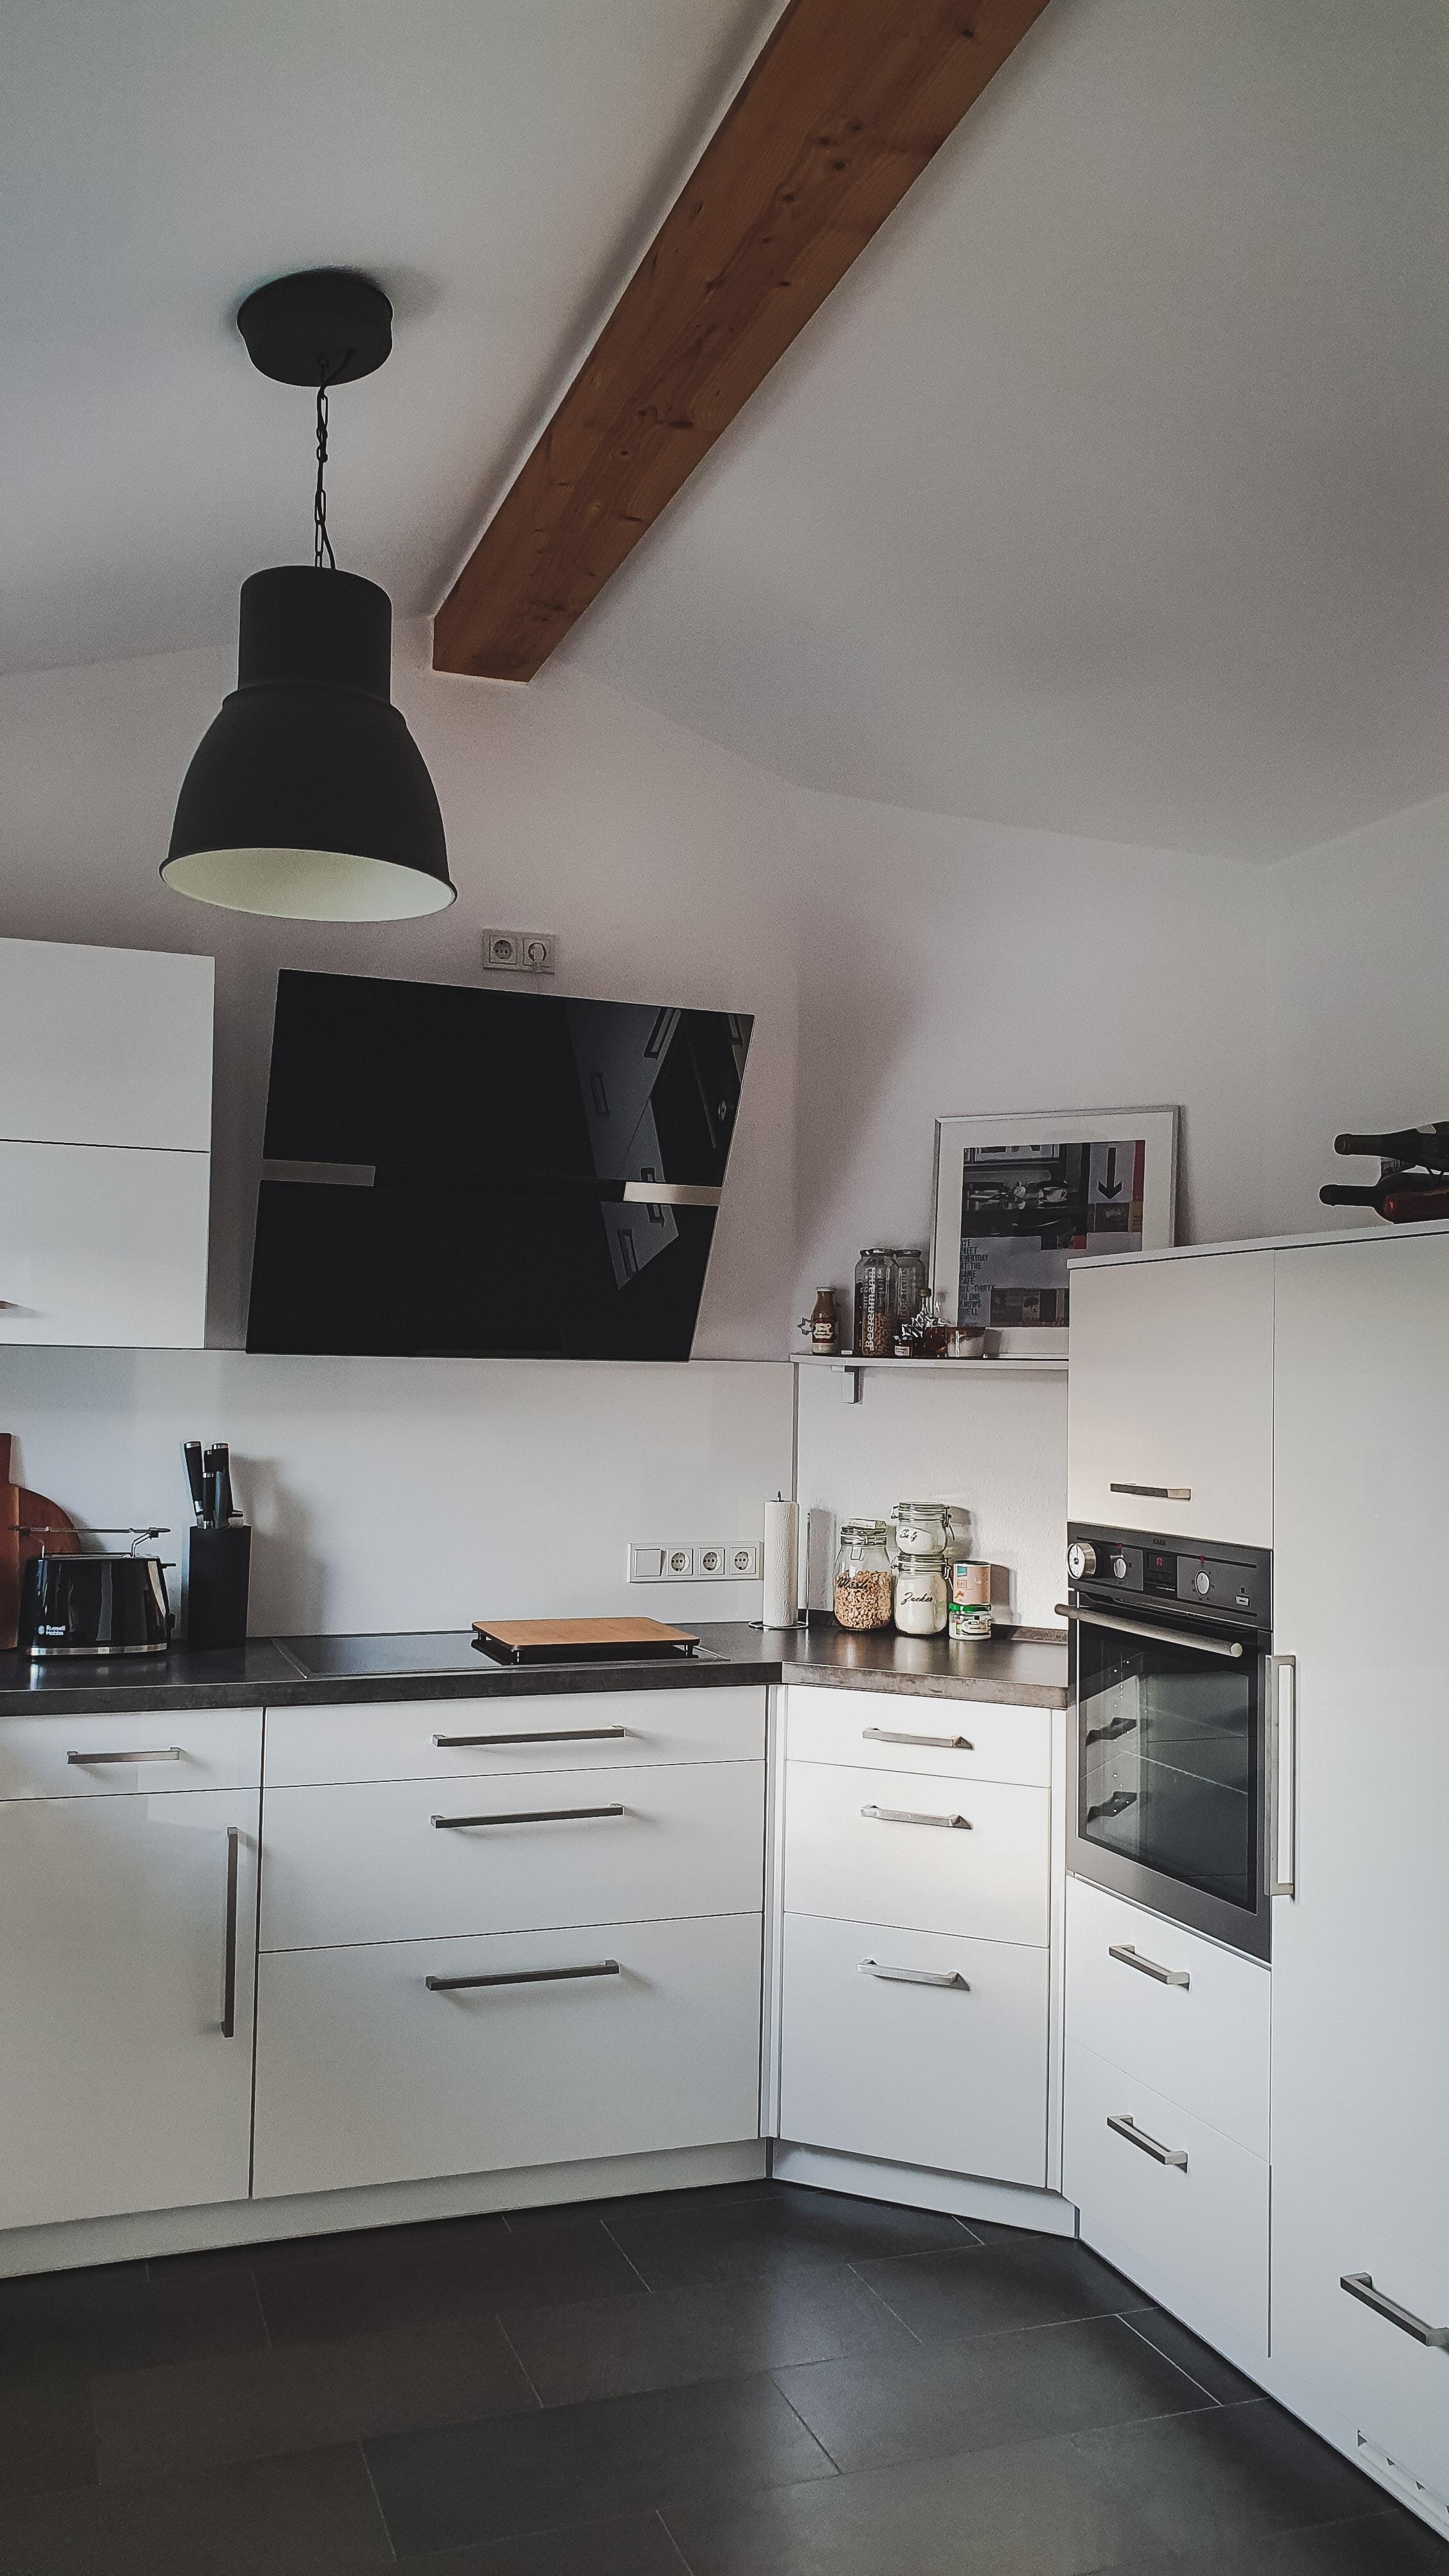 Genug Platz für eine KitchenAid 🥰❤
#küchenliebe #livingchallenge #homesweethome #kücheninspo